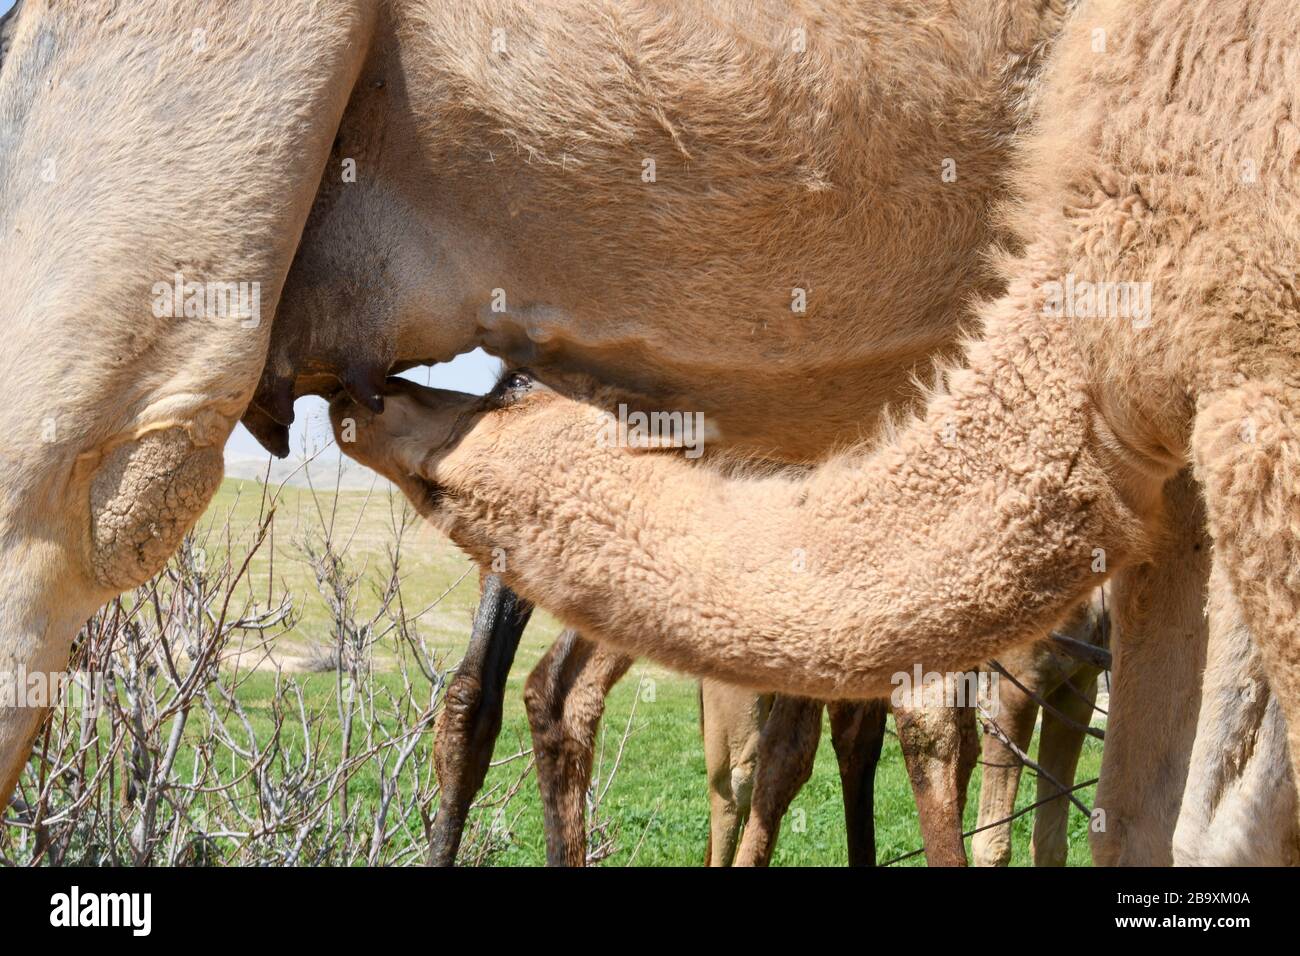 Un cammello arabo femminile (Camelus dromedarius) alimenta la sua nuova prole nata. Fotografata valle di Kidron, deserto della Giudea, Cisgiordania Palestina Israele in M Foto Stock